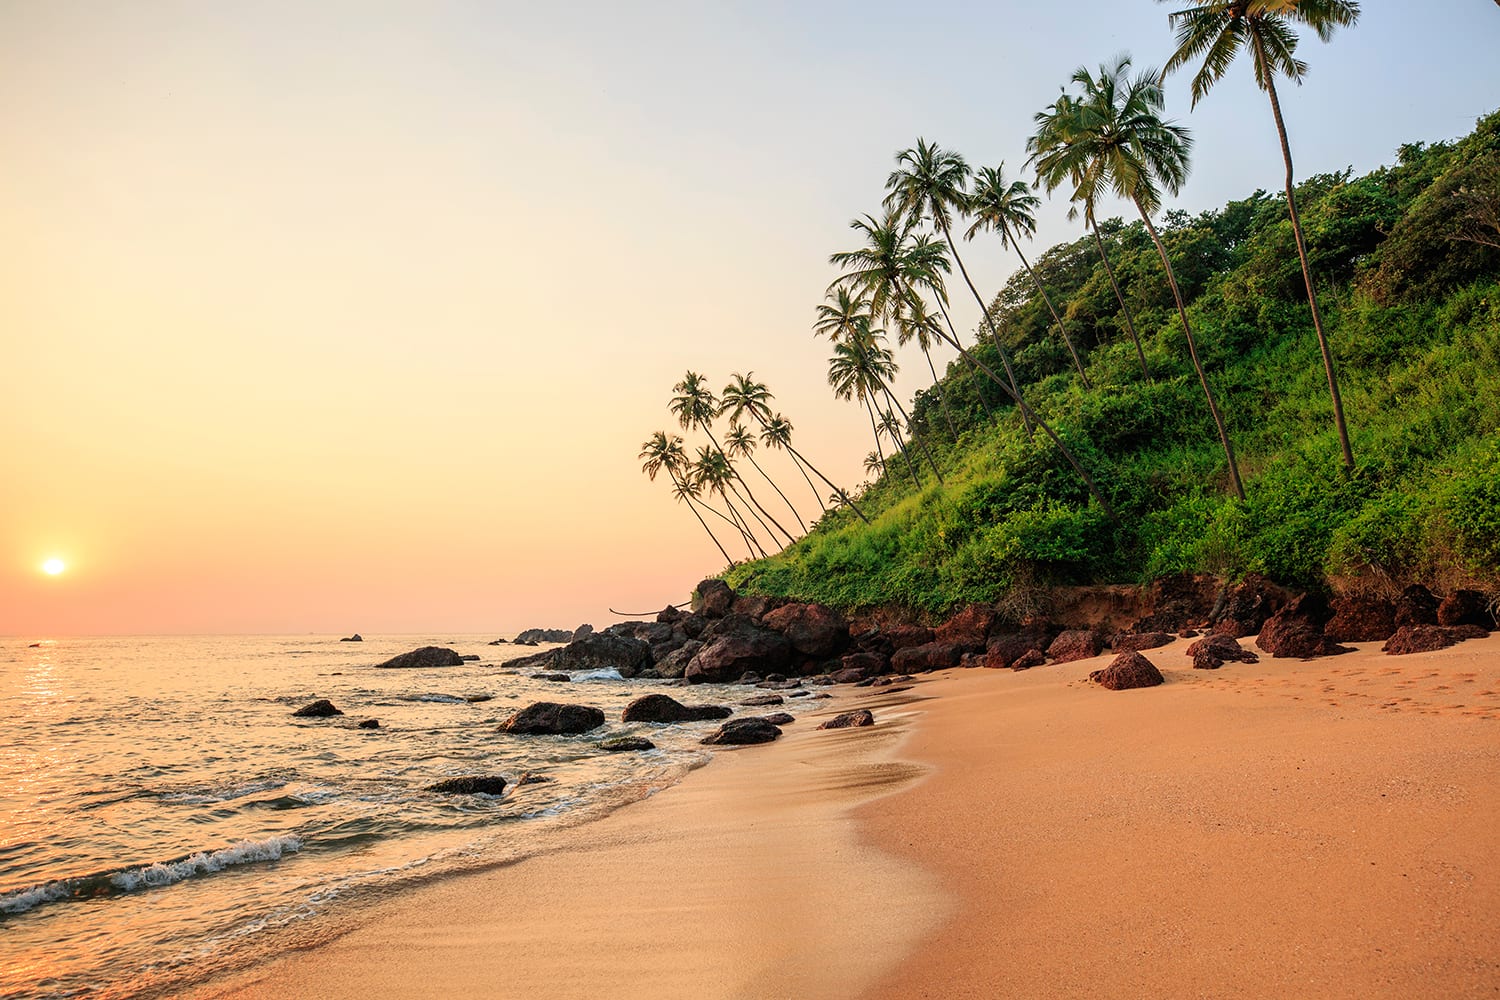 Entspannen Sie in Ihrem Indien Urlaub am magischen Strand von Goa